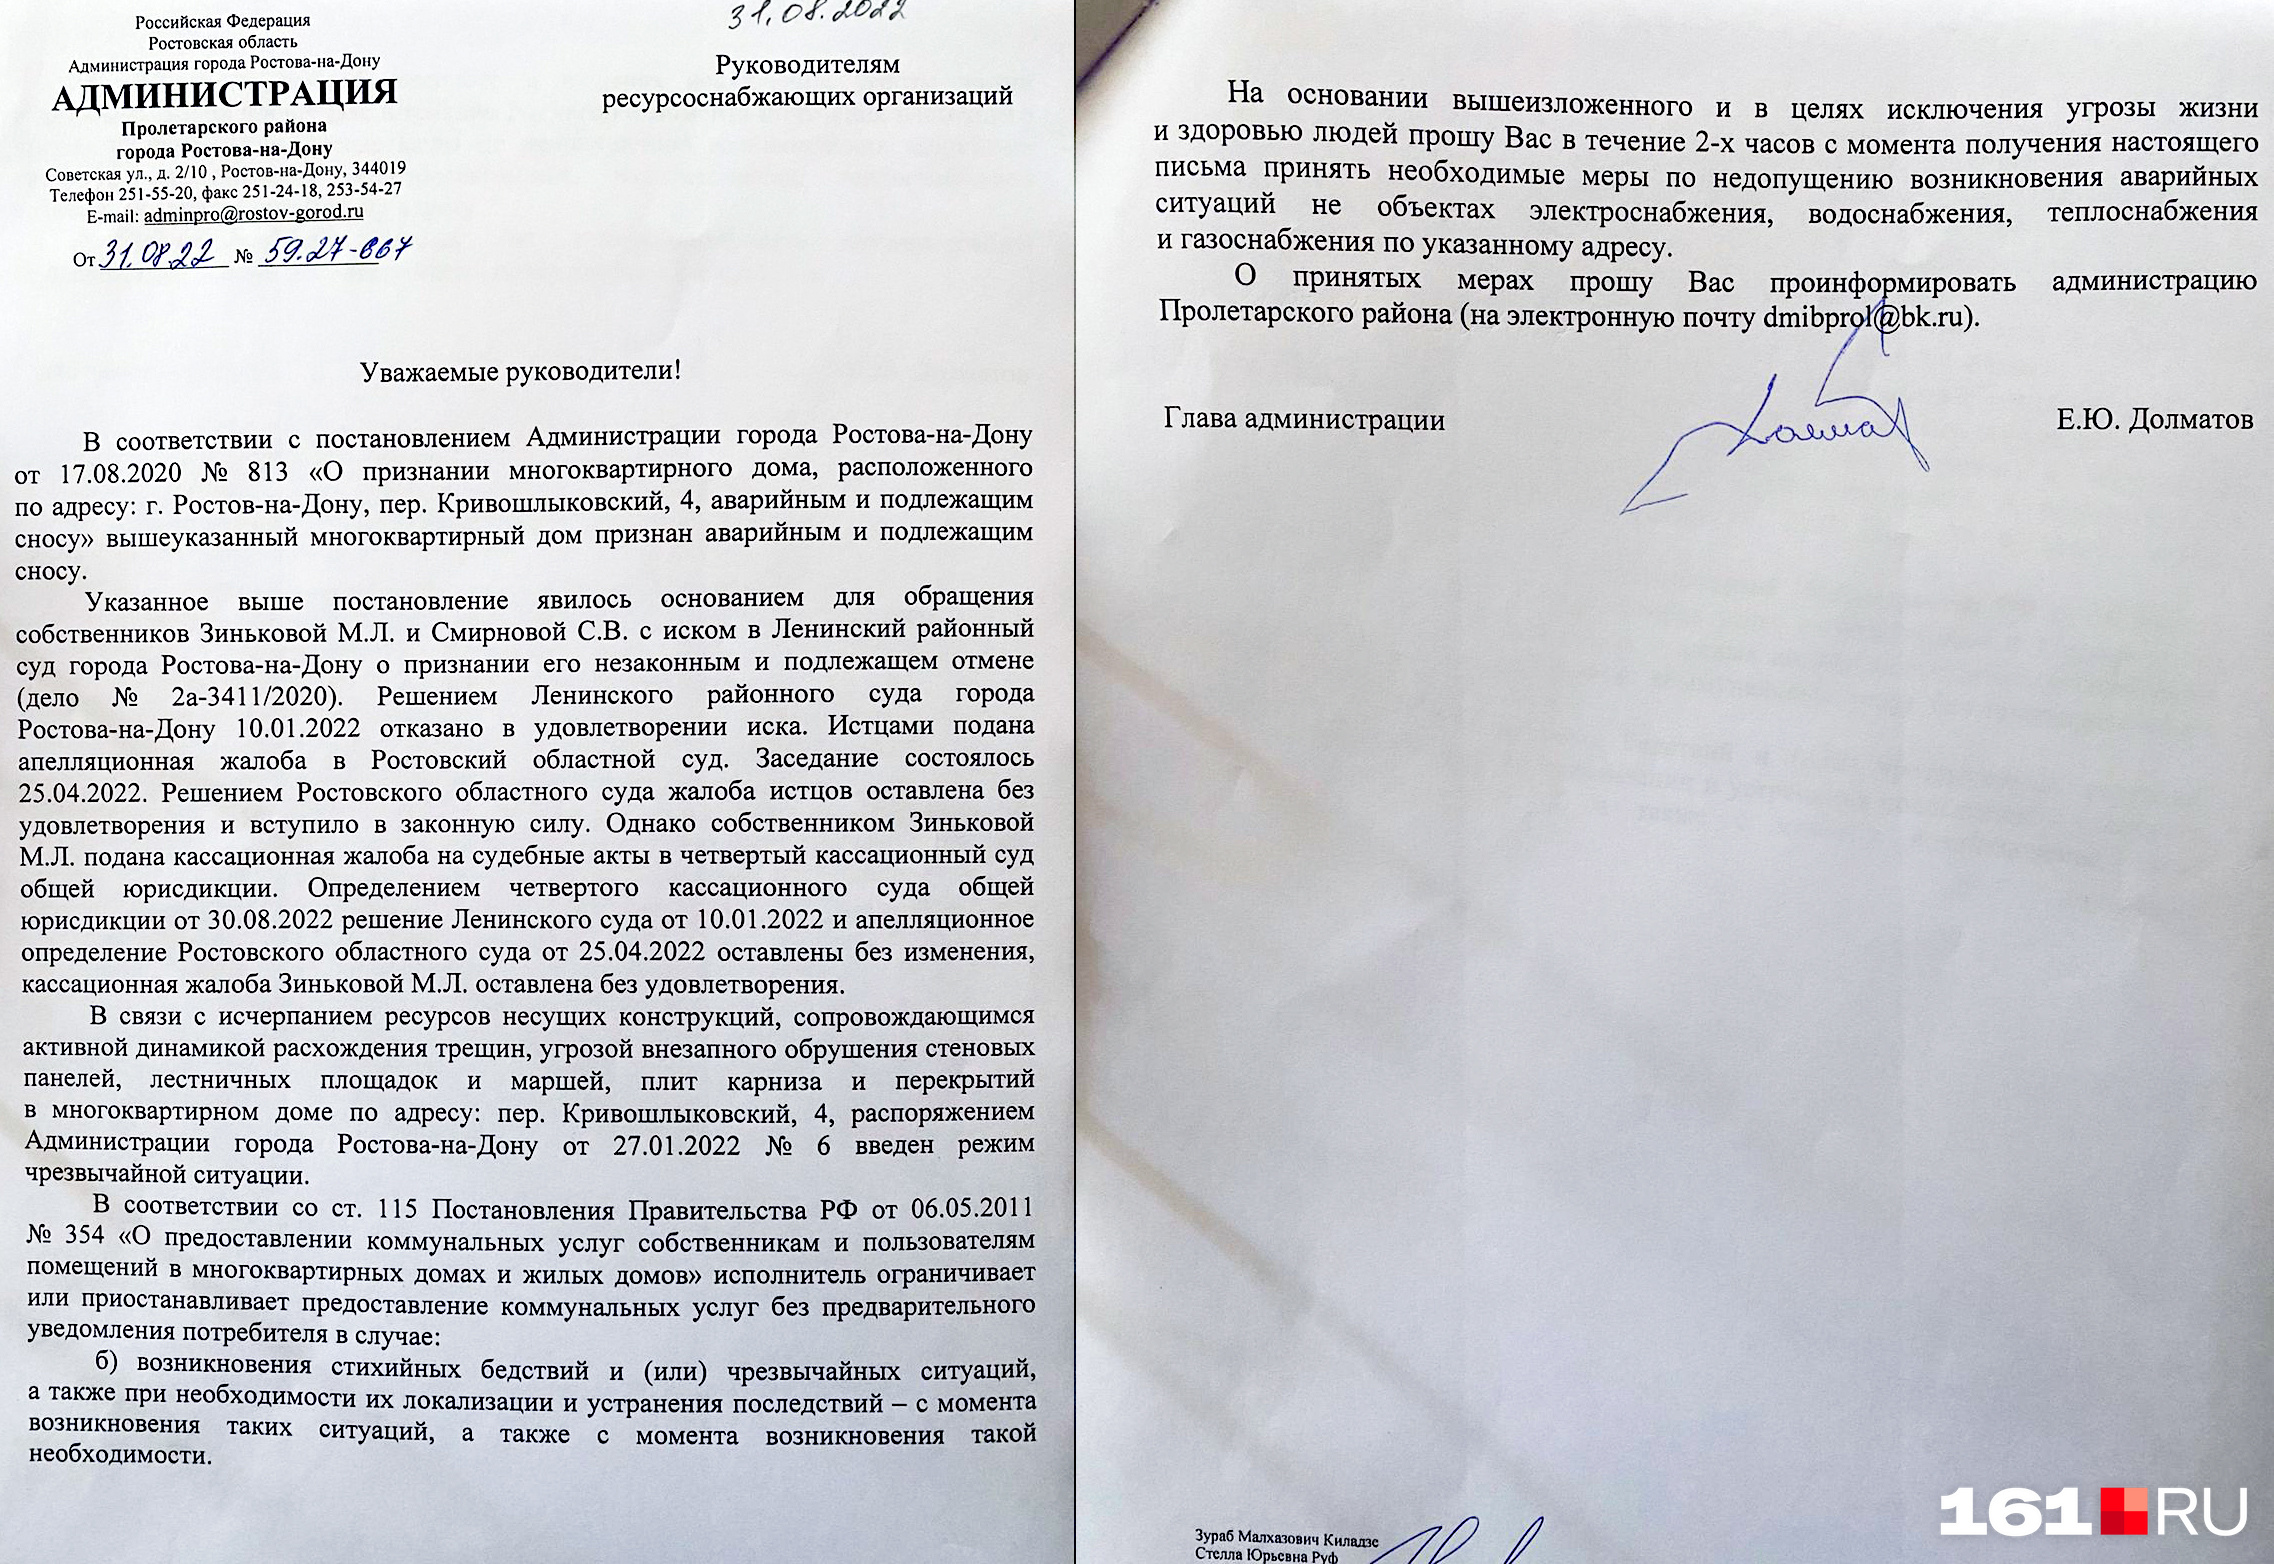 Это тот самый документ, подписанный Егором Долматовым 